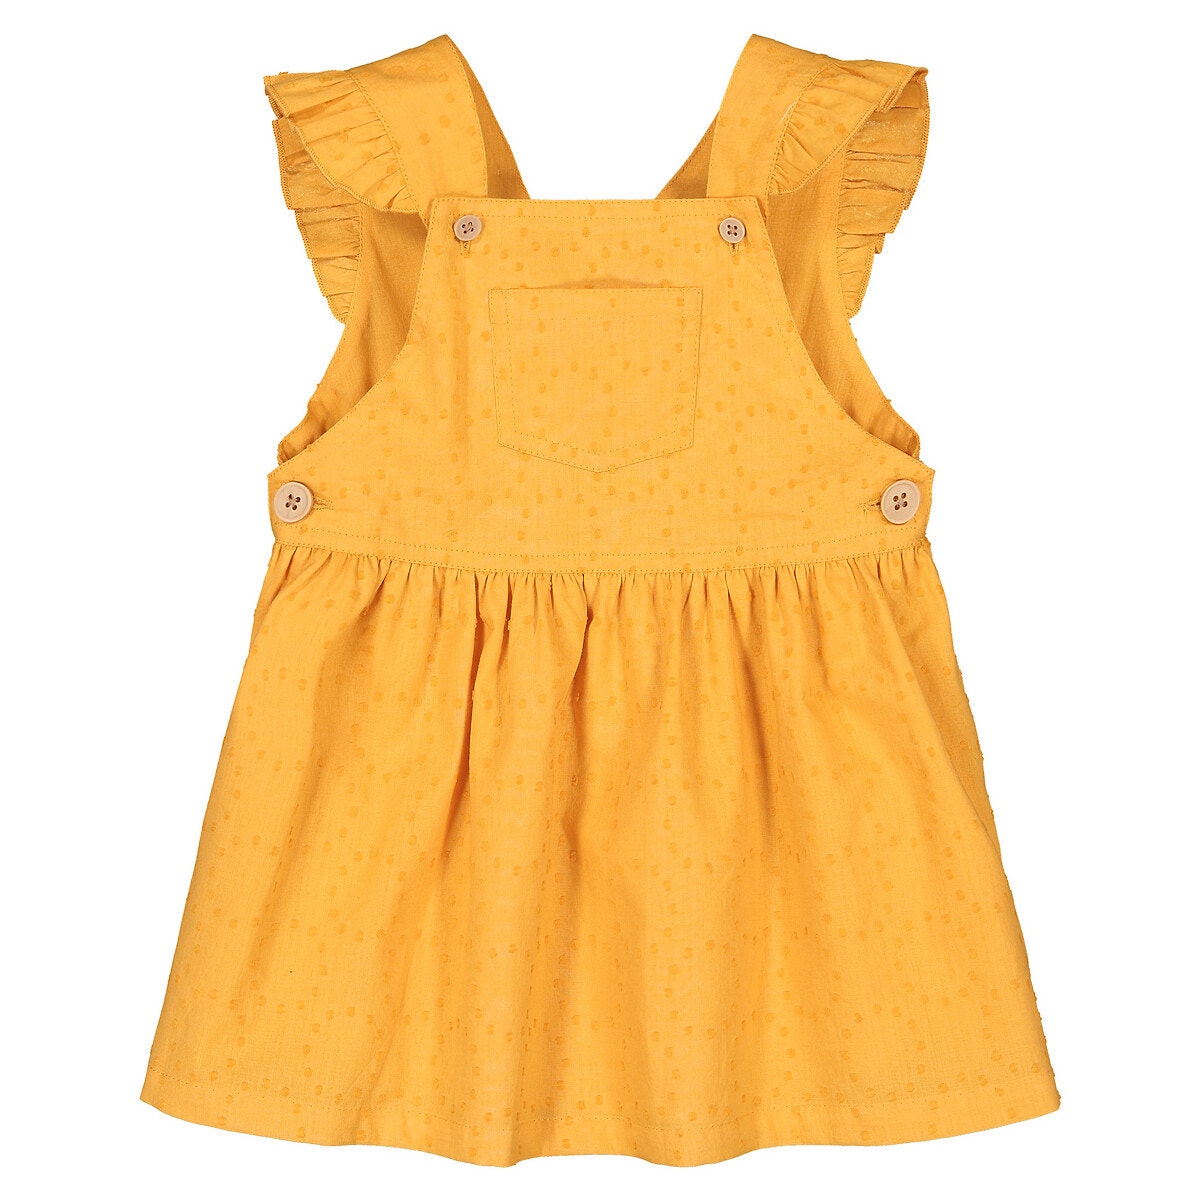 Φόρεμα με κέντημα και βολάν, 3 μηνών - 4 ετών ΠΑΙΔΙ | Φορέματα | Αμάνικα